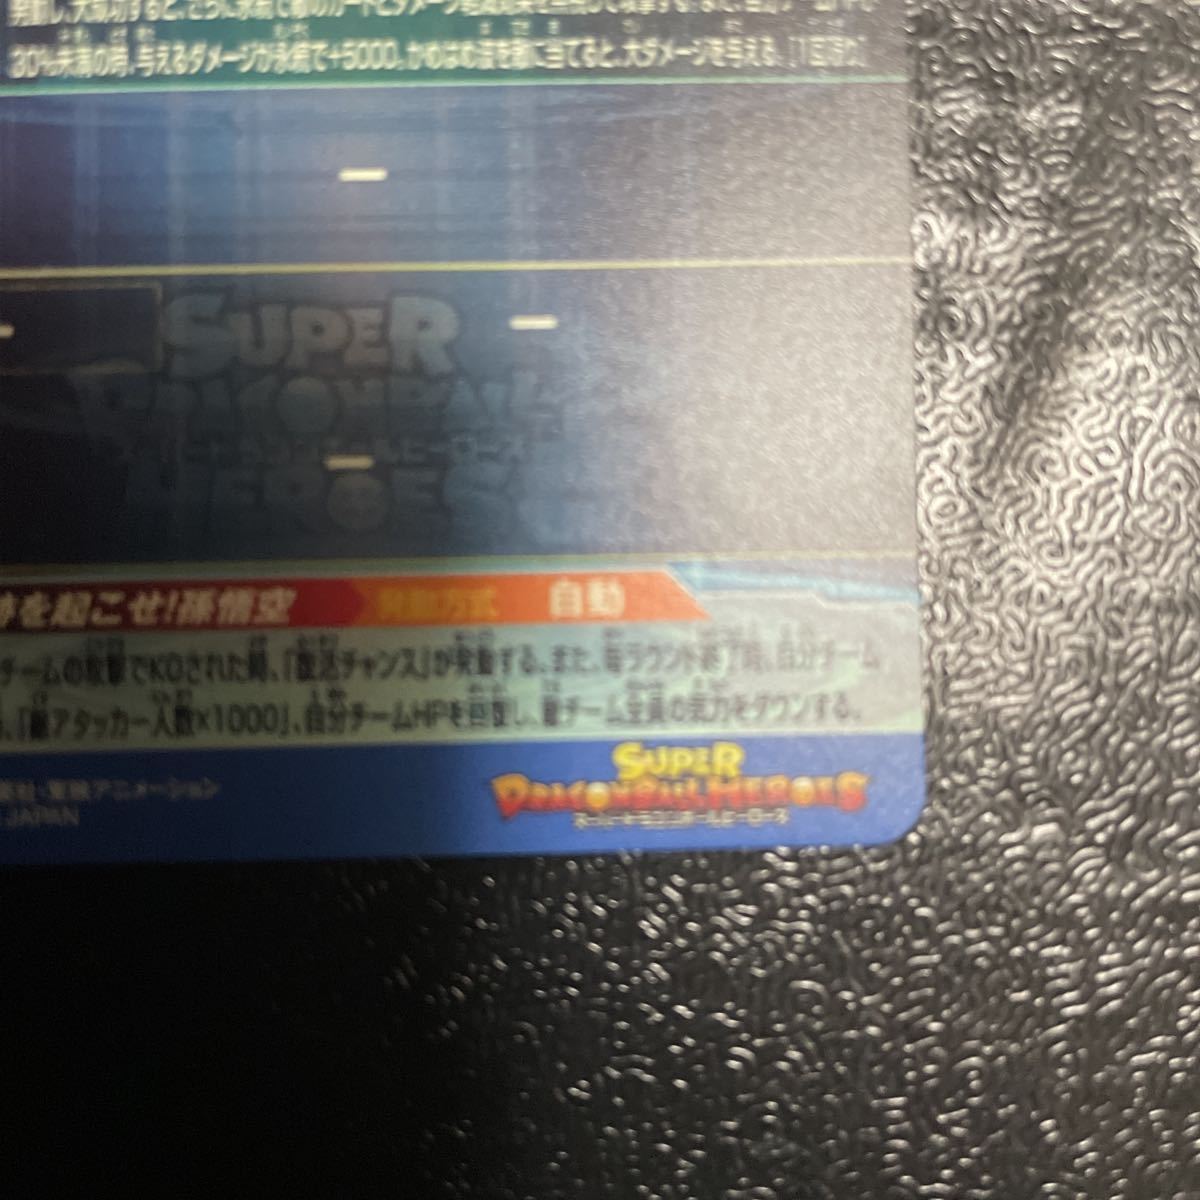 シリアル ドラゴンボールヒーローズ 孫悟空 UGM1-SEC4 パラレル 5700枚